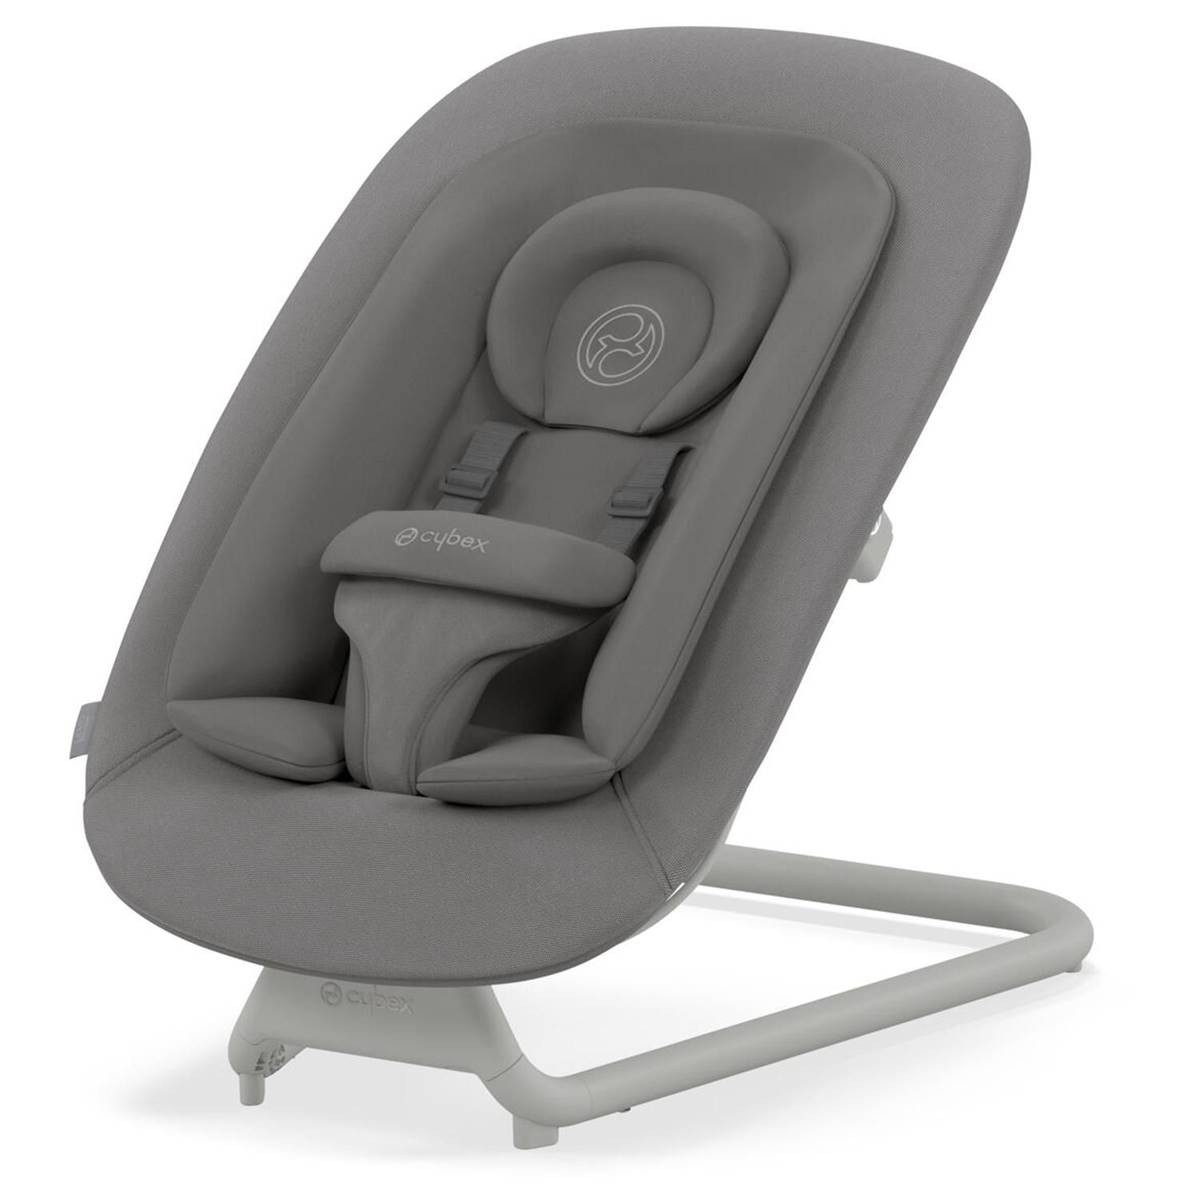 Siège auto bébé -Les conseils du spécialiste siège auto bébé